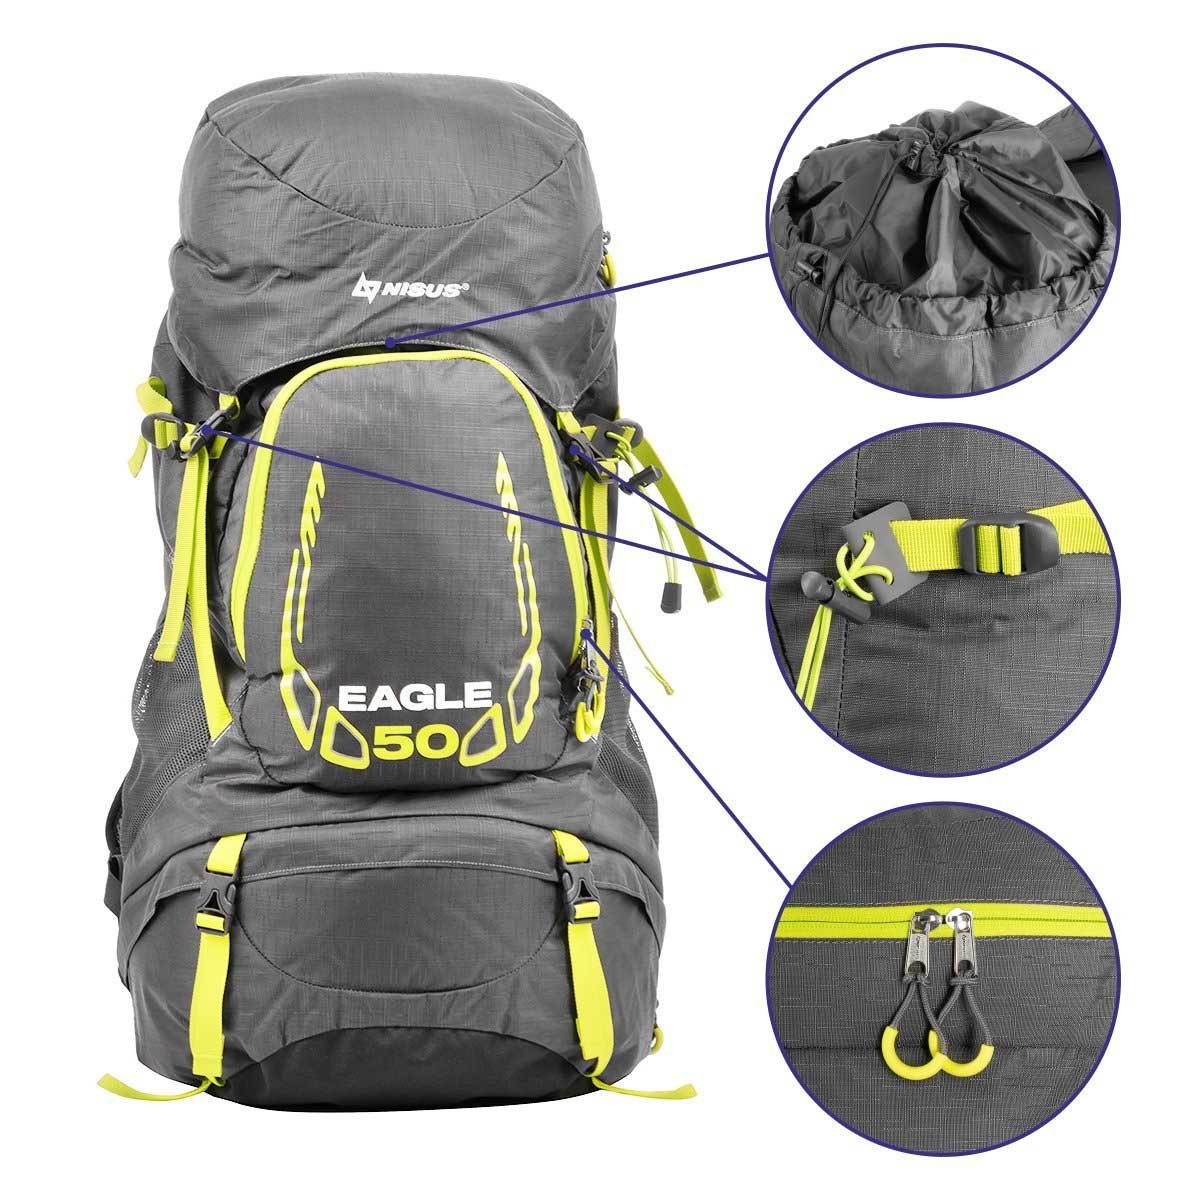 Nisus Eagle 50 L Internal Frame Hiking Backpack, Rain Cover